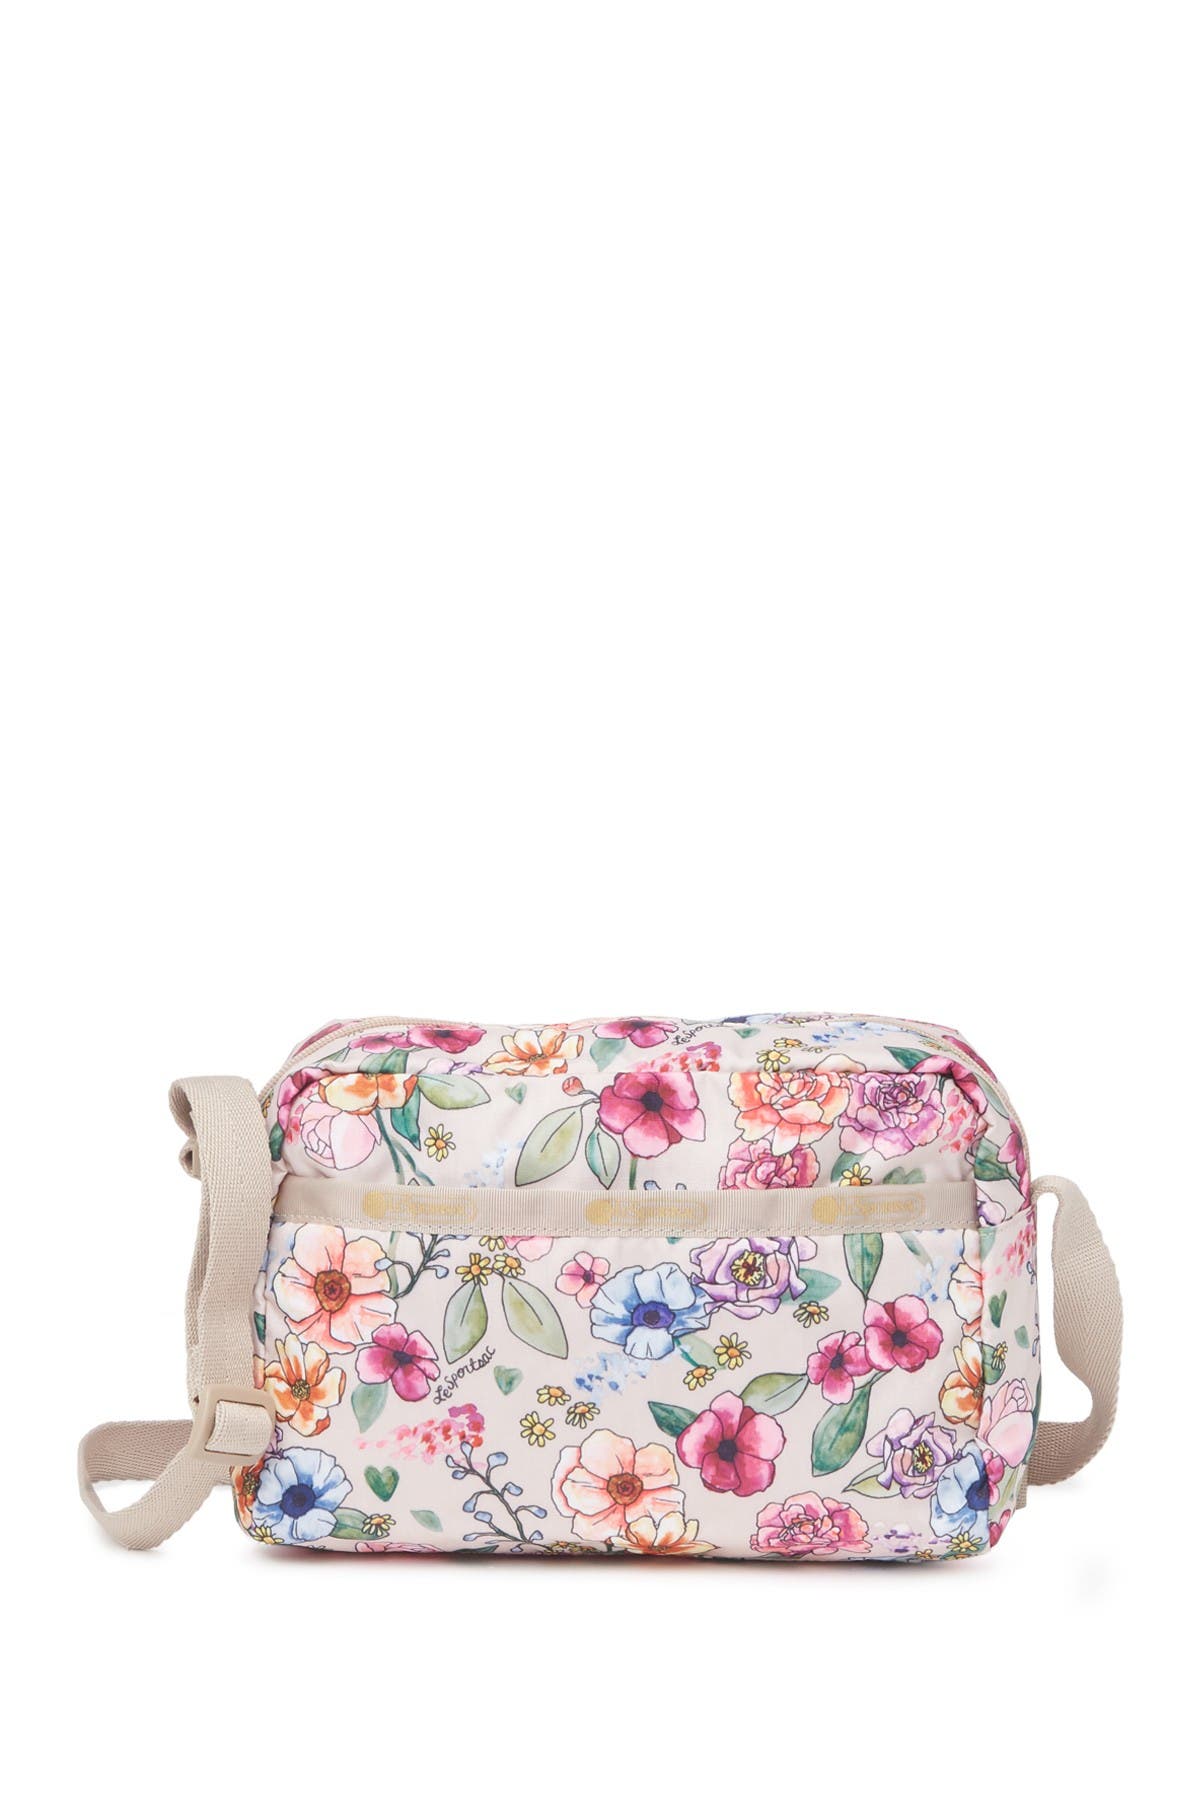 Lesportsac Daniella Crossbody Bag In Sunshine Garden | ModeSens